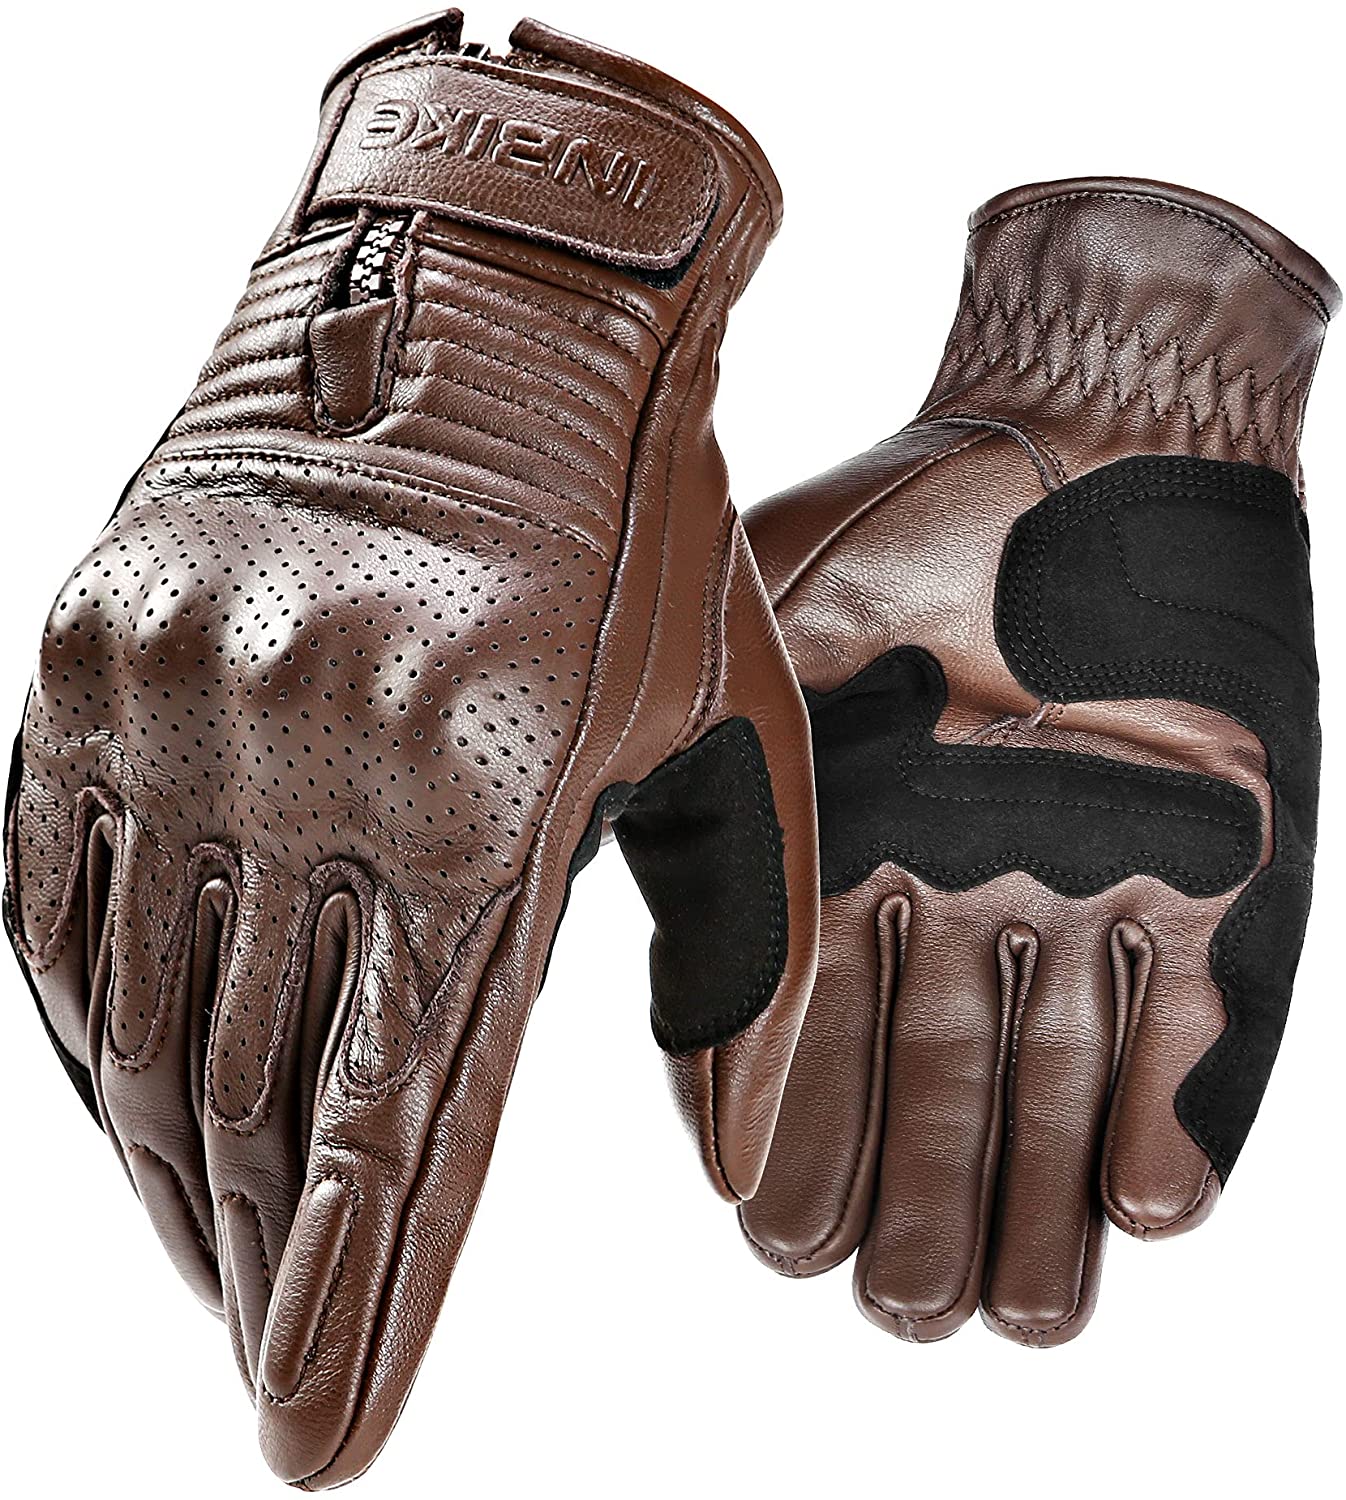 INBIKE motorcycle gloves